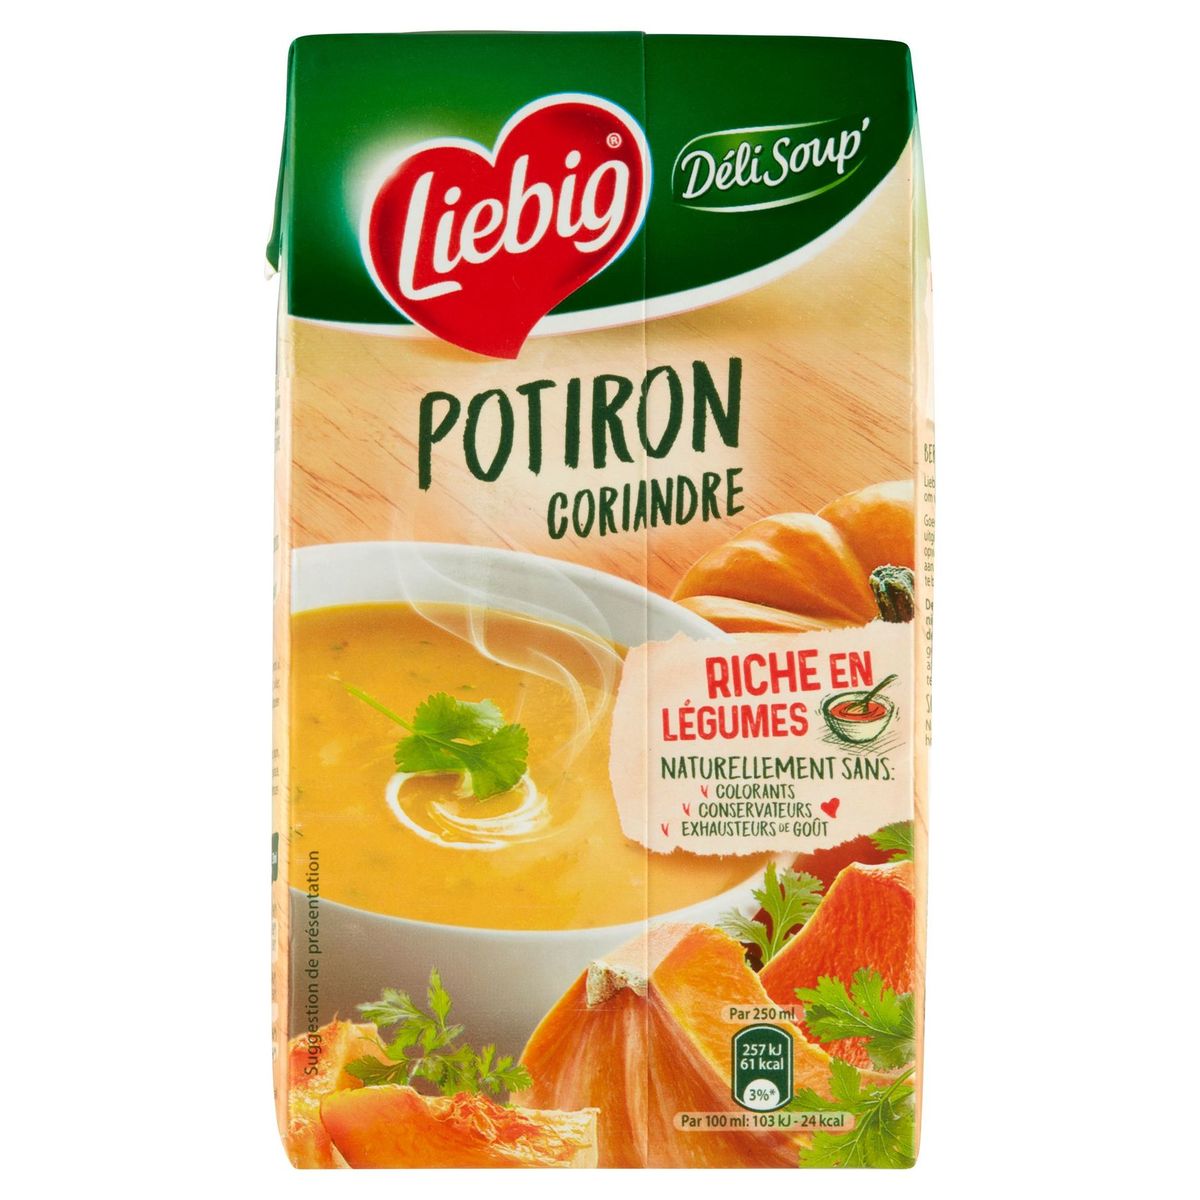 Liebig Déli Soup' Potiron Coriandre 1 L